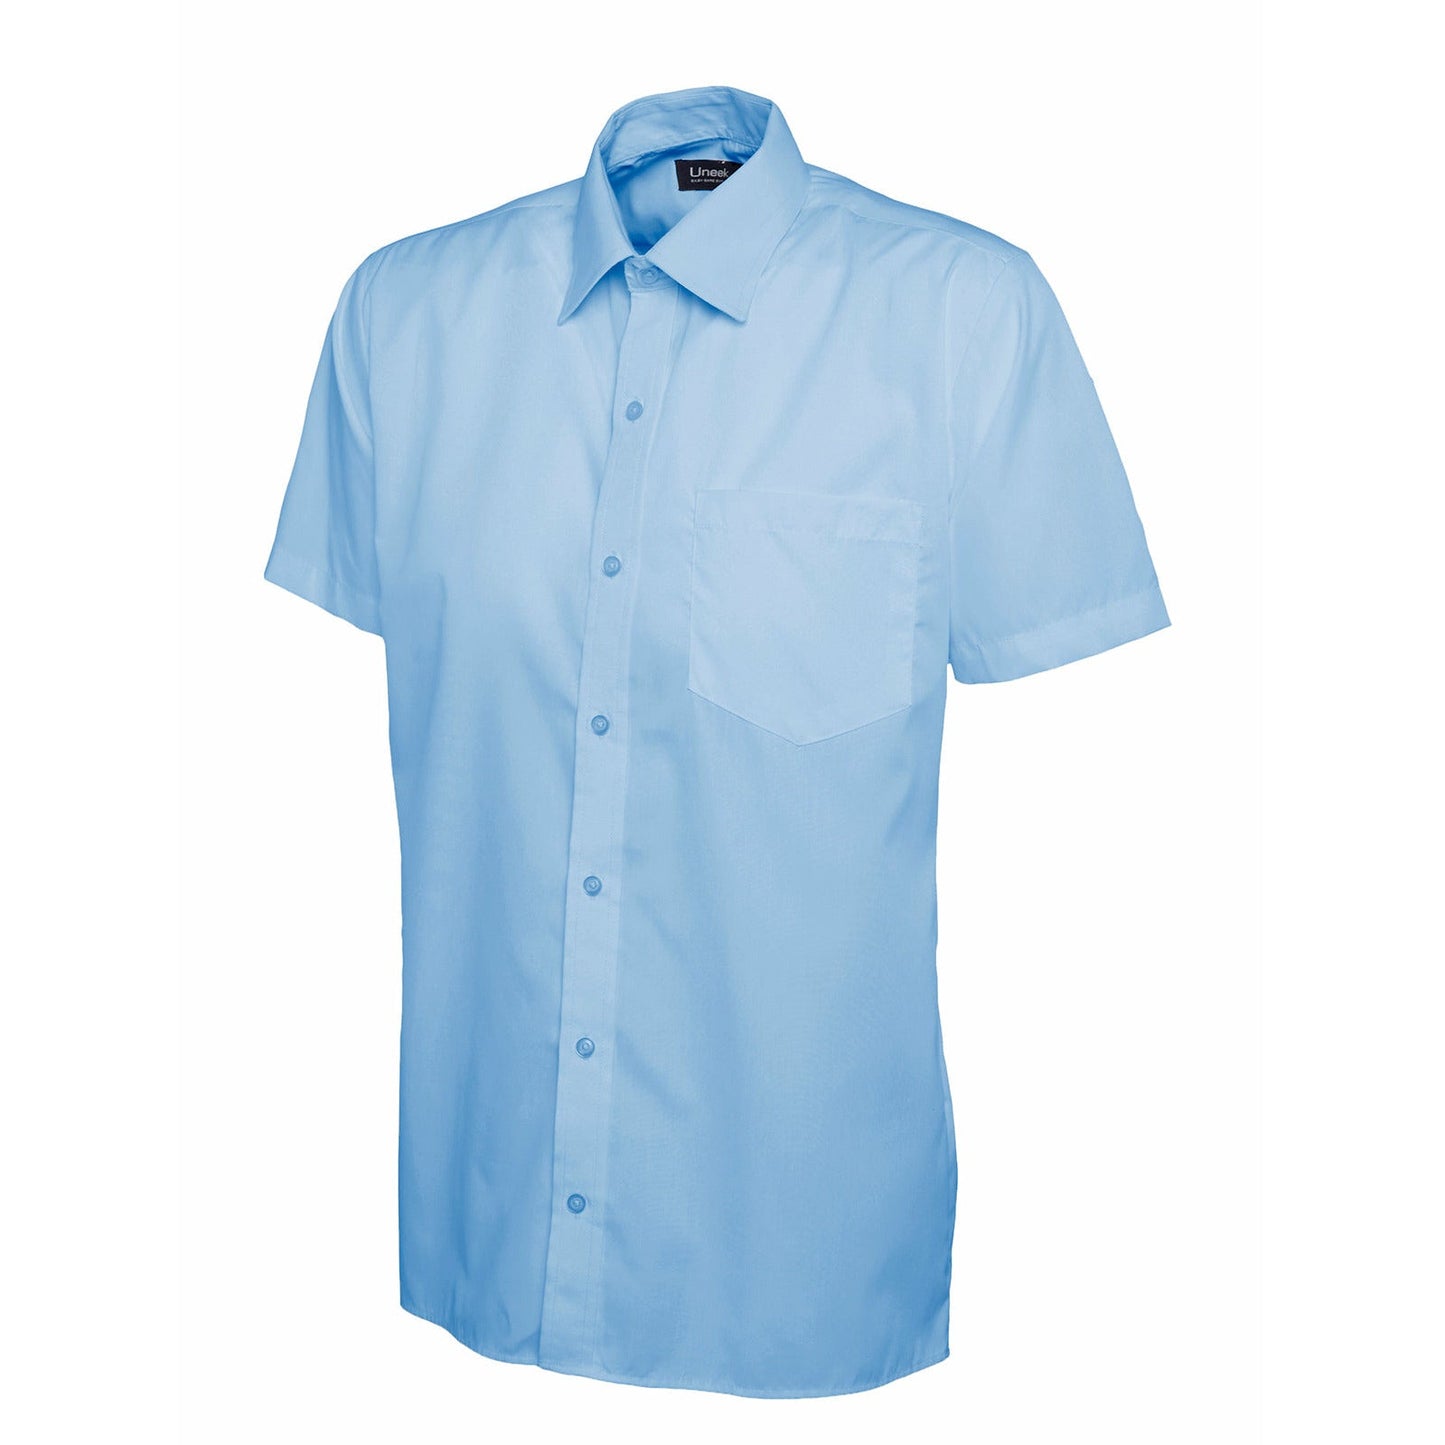 Mens Poplin Half Sleeve Shirt (14.5 - 16.5) - Light Blue